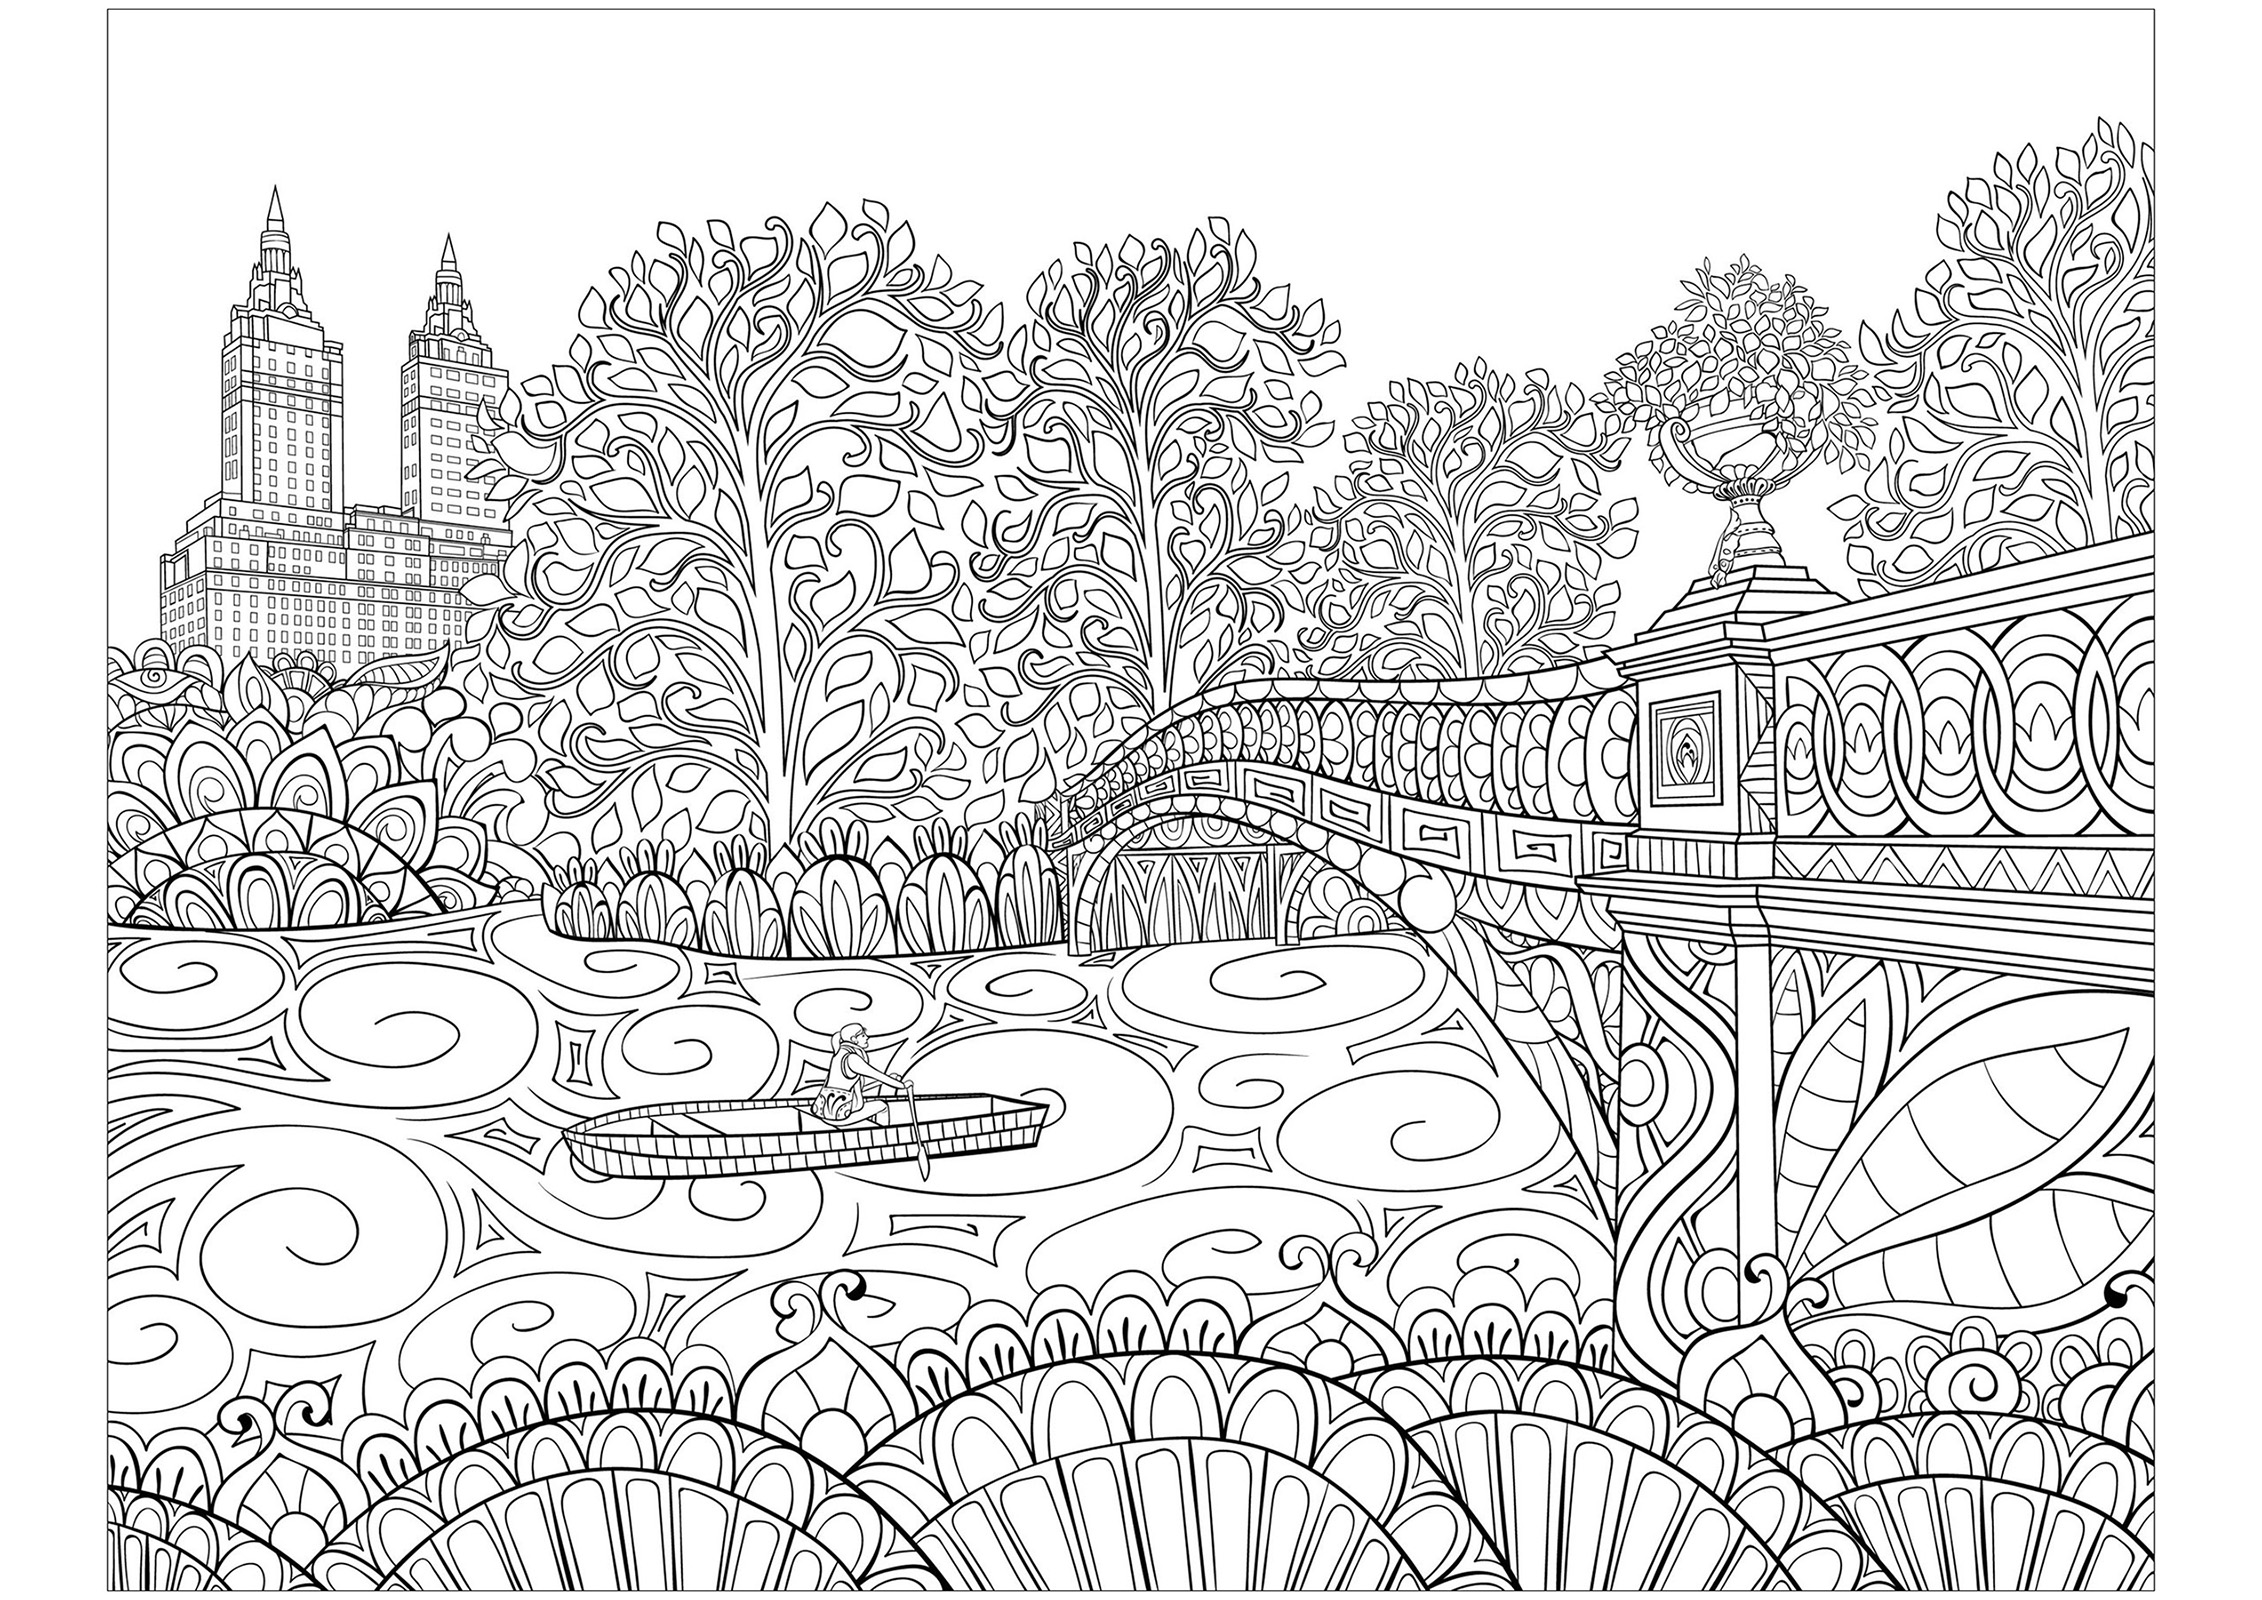 A famosa Bow Bridge no Central Park (Nova Iorque), e vários elementos para colorir. A Bow Bridge é um dos elementos mais emblemáticos e fotografados do Central Park. Construída em 1862, esta ponte da era vitoriana atravessa o lago do Central Park e liga Cherry Hill e o Ramble, Artista : Nonuzza   Fonte : 123rf